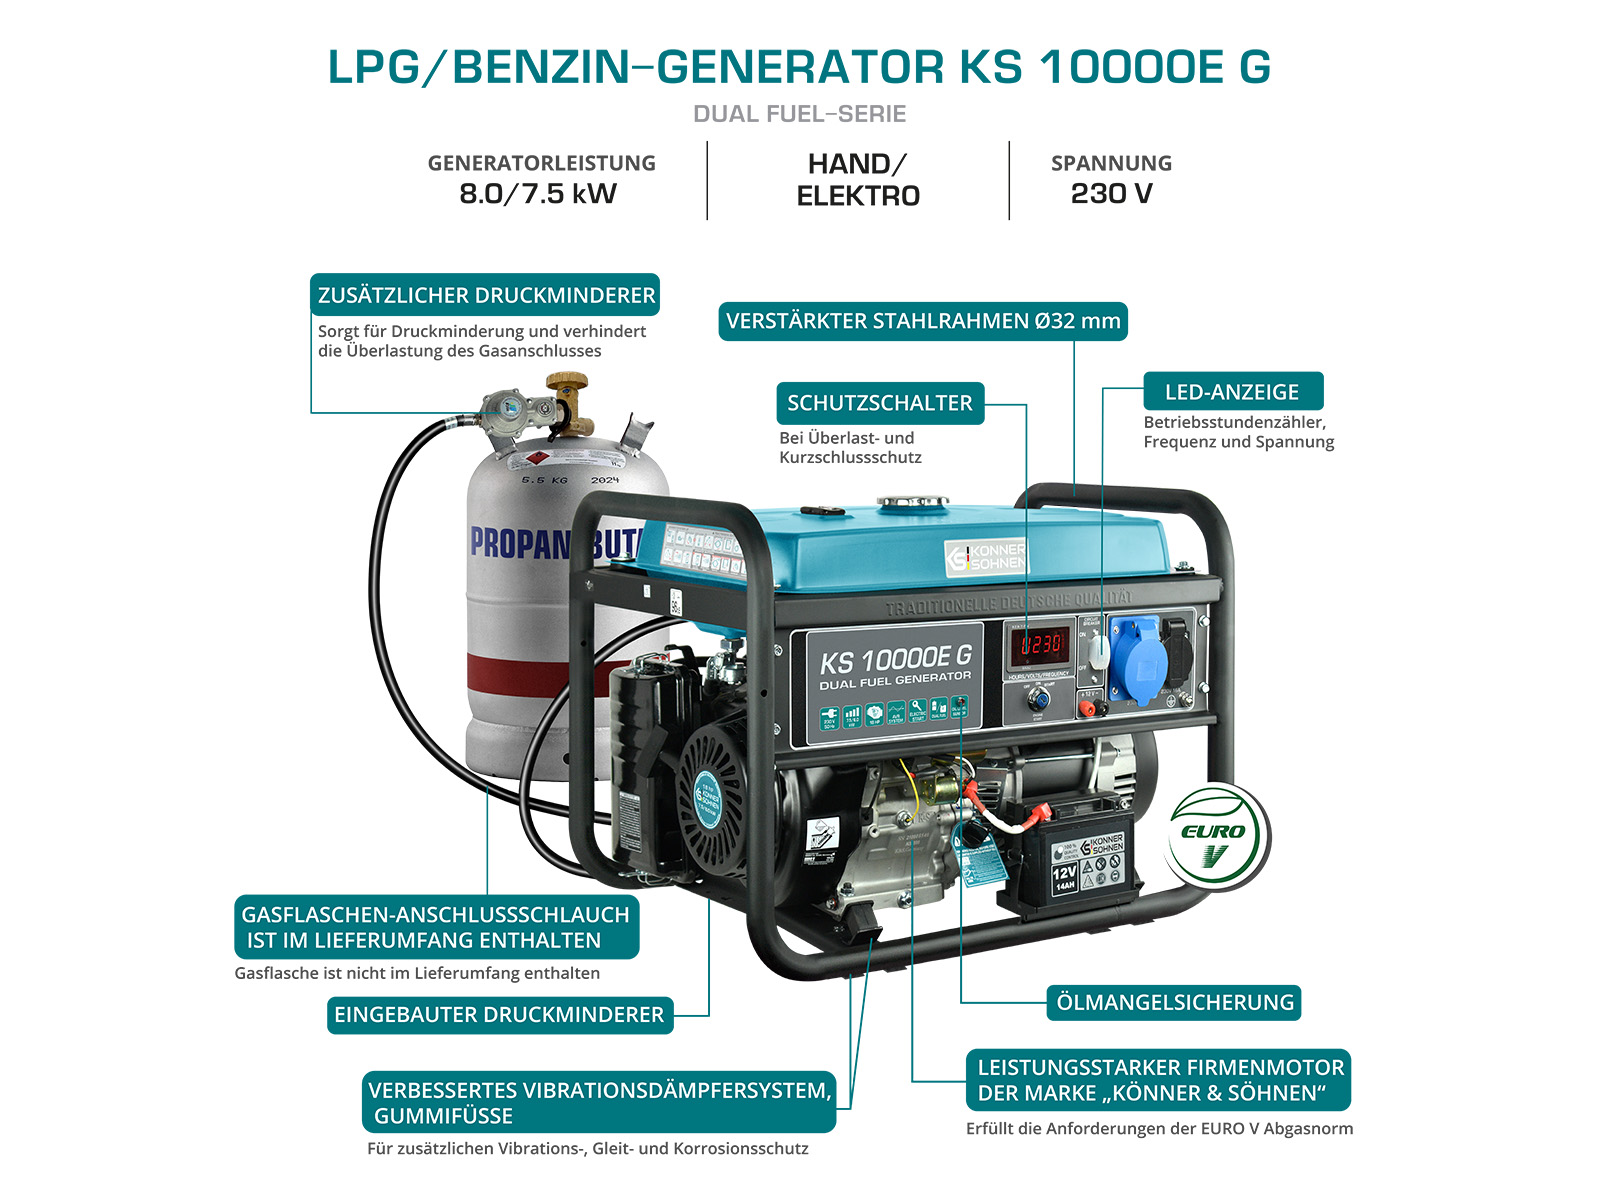 LPG/Benzin-Generator "Könner & Söhnen" KS 10000E G